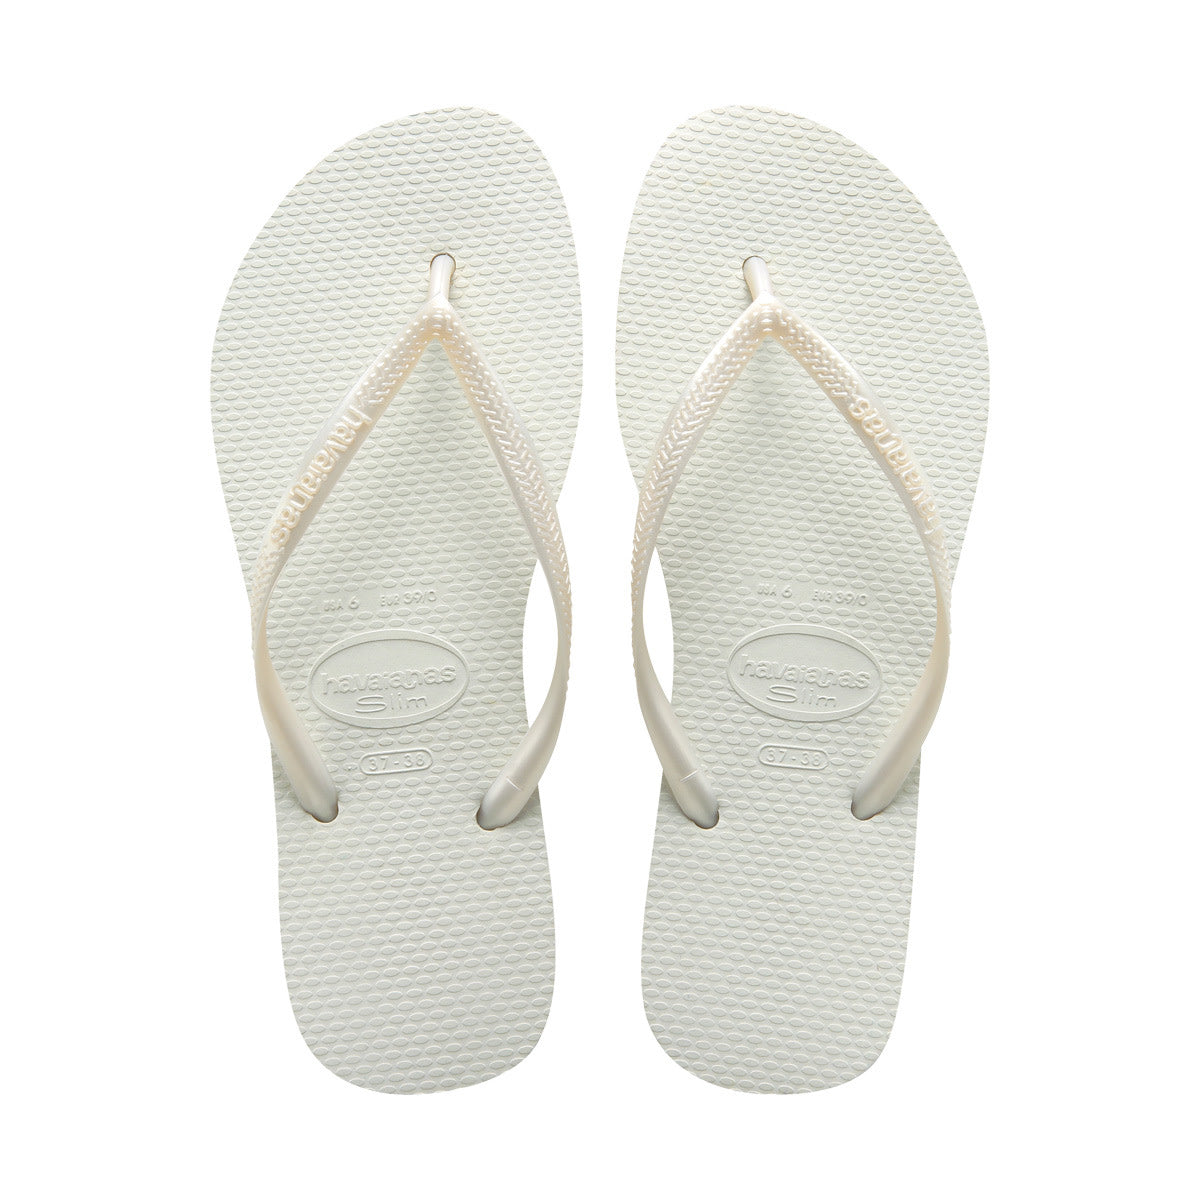 Havaianas Slim Womens Sandal 0001-White 9